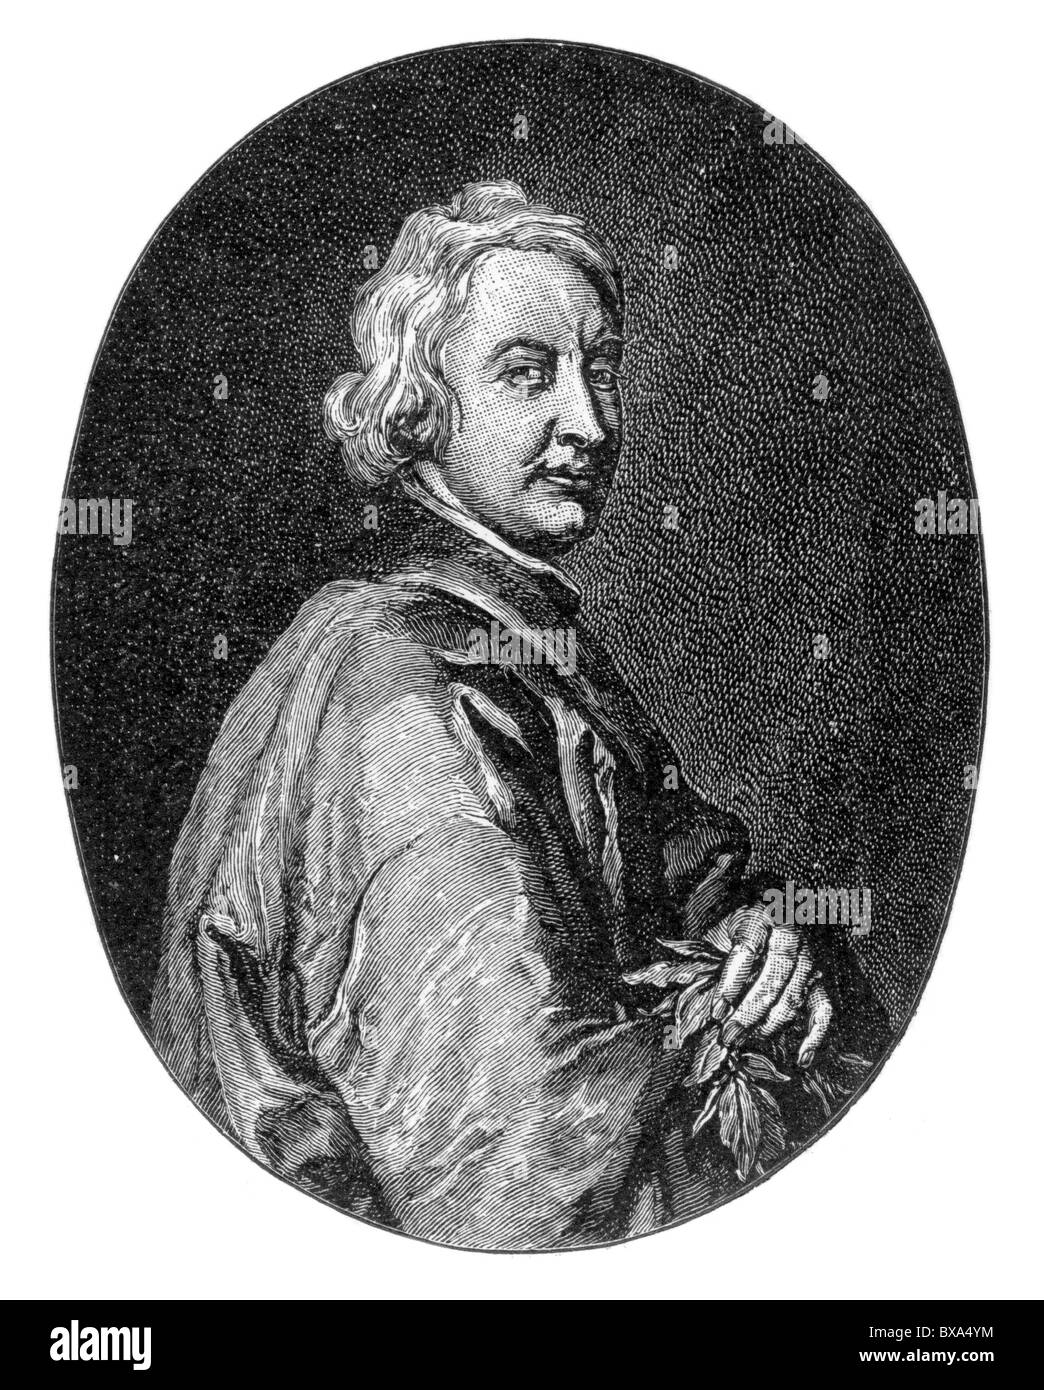 Portrait de John Dryden, poète anglais, critique littéraire, traducteur et dramaturge ; noir et blanc Illustration ; Banque D'Images